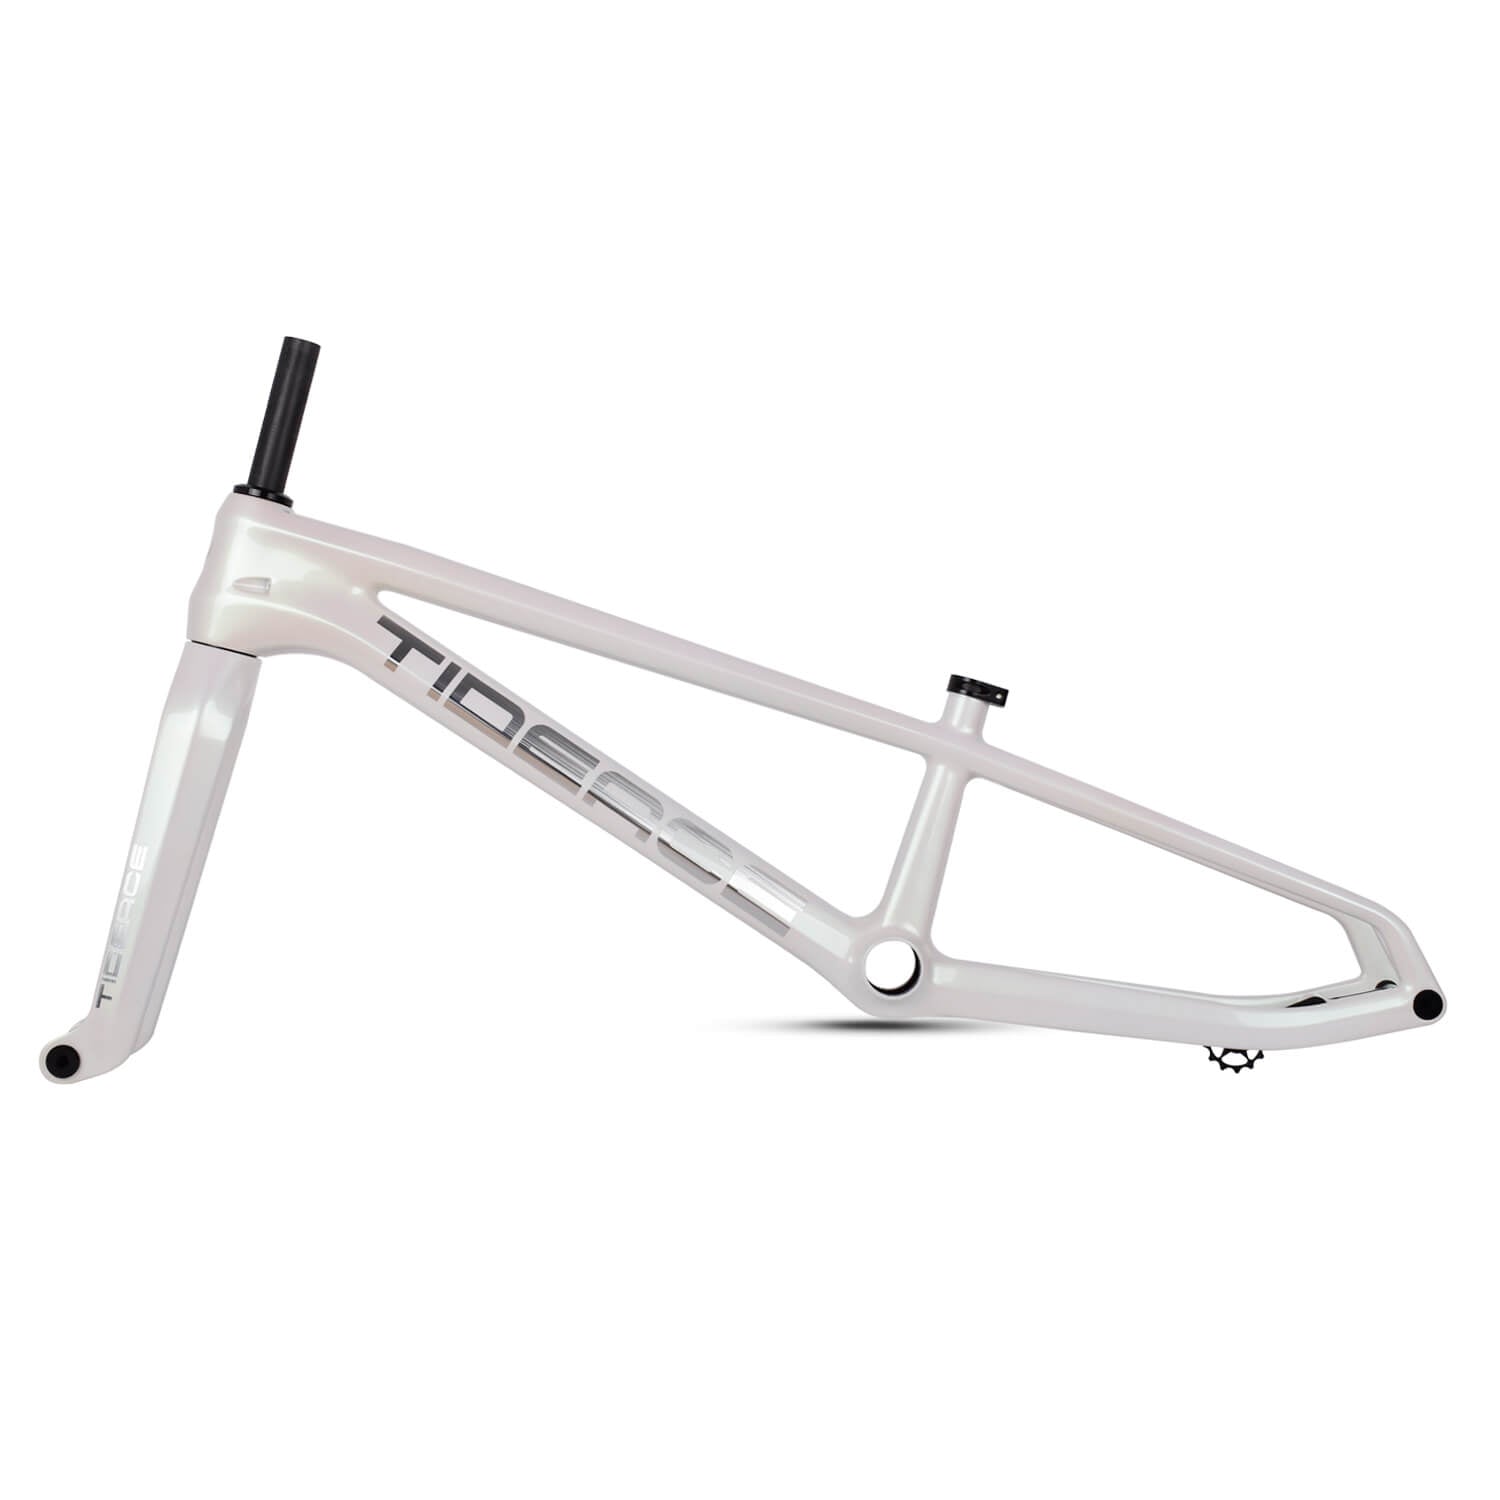 Carbon Fiber BMX Racing Bike Frame With Fork